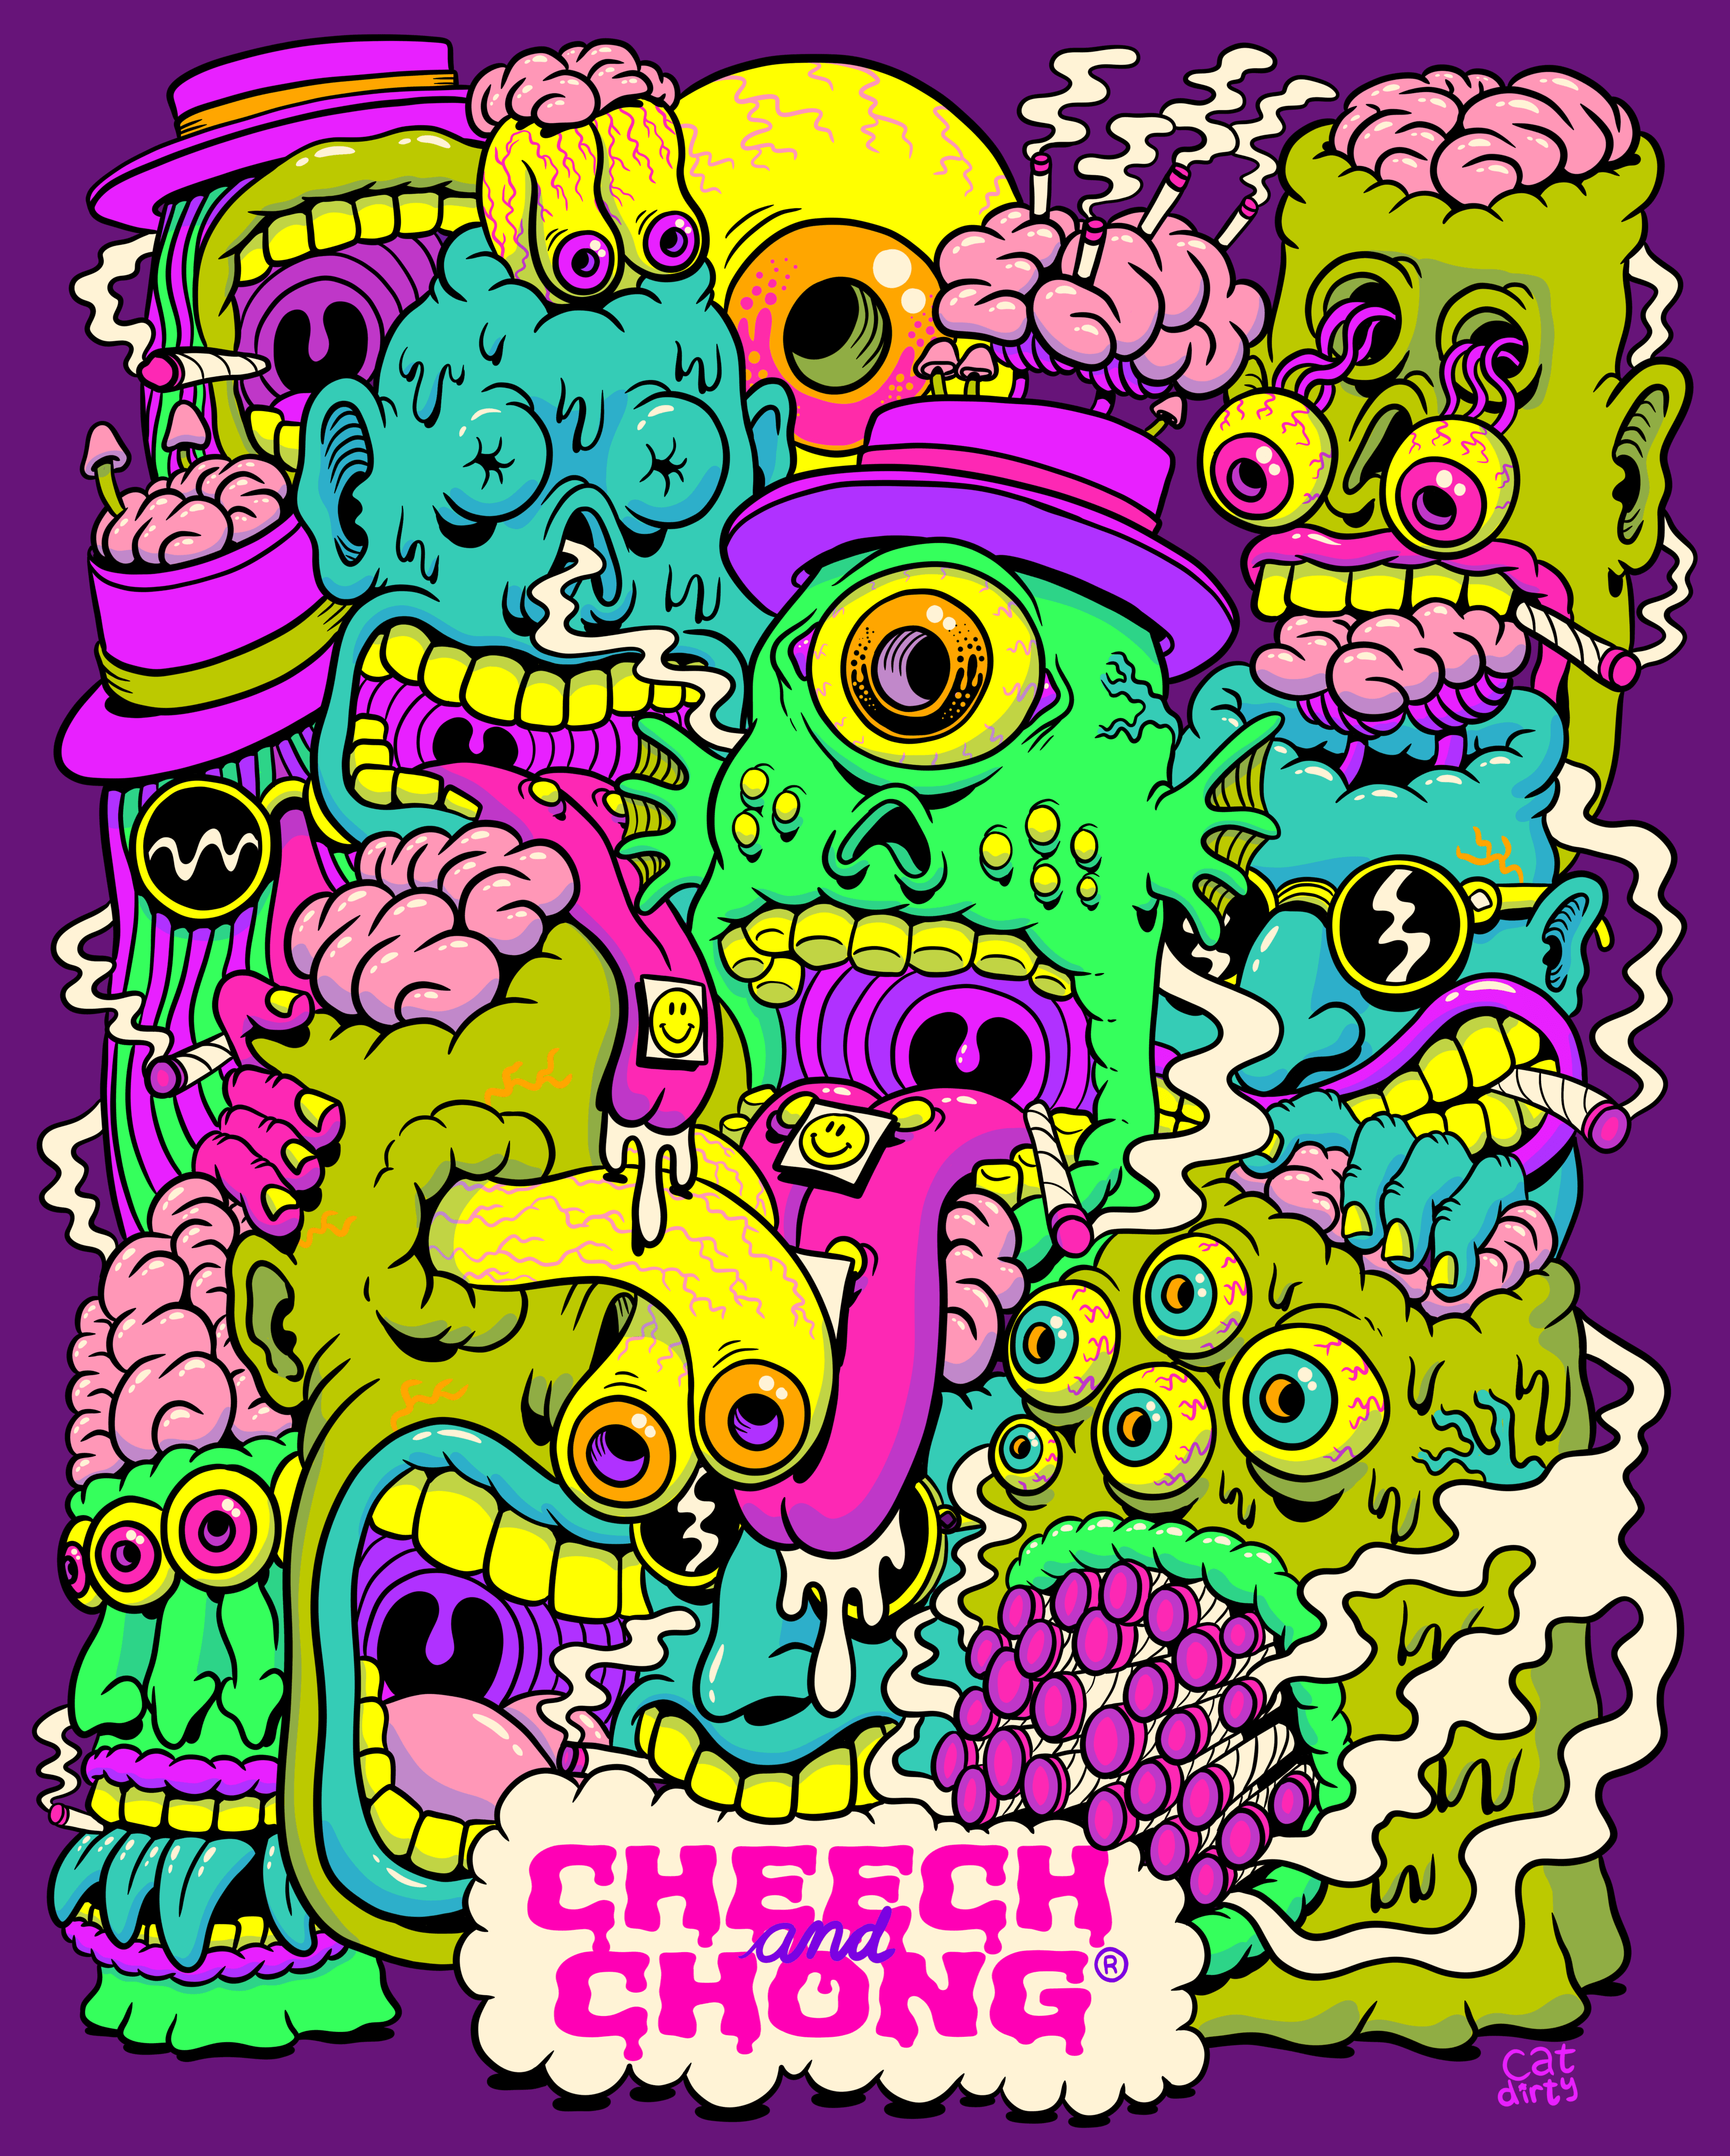 Cheech & Chong: Cat Dirty - 10/22